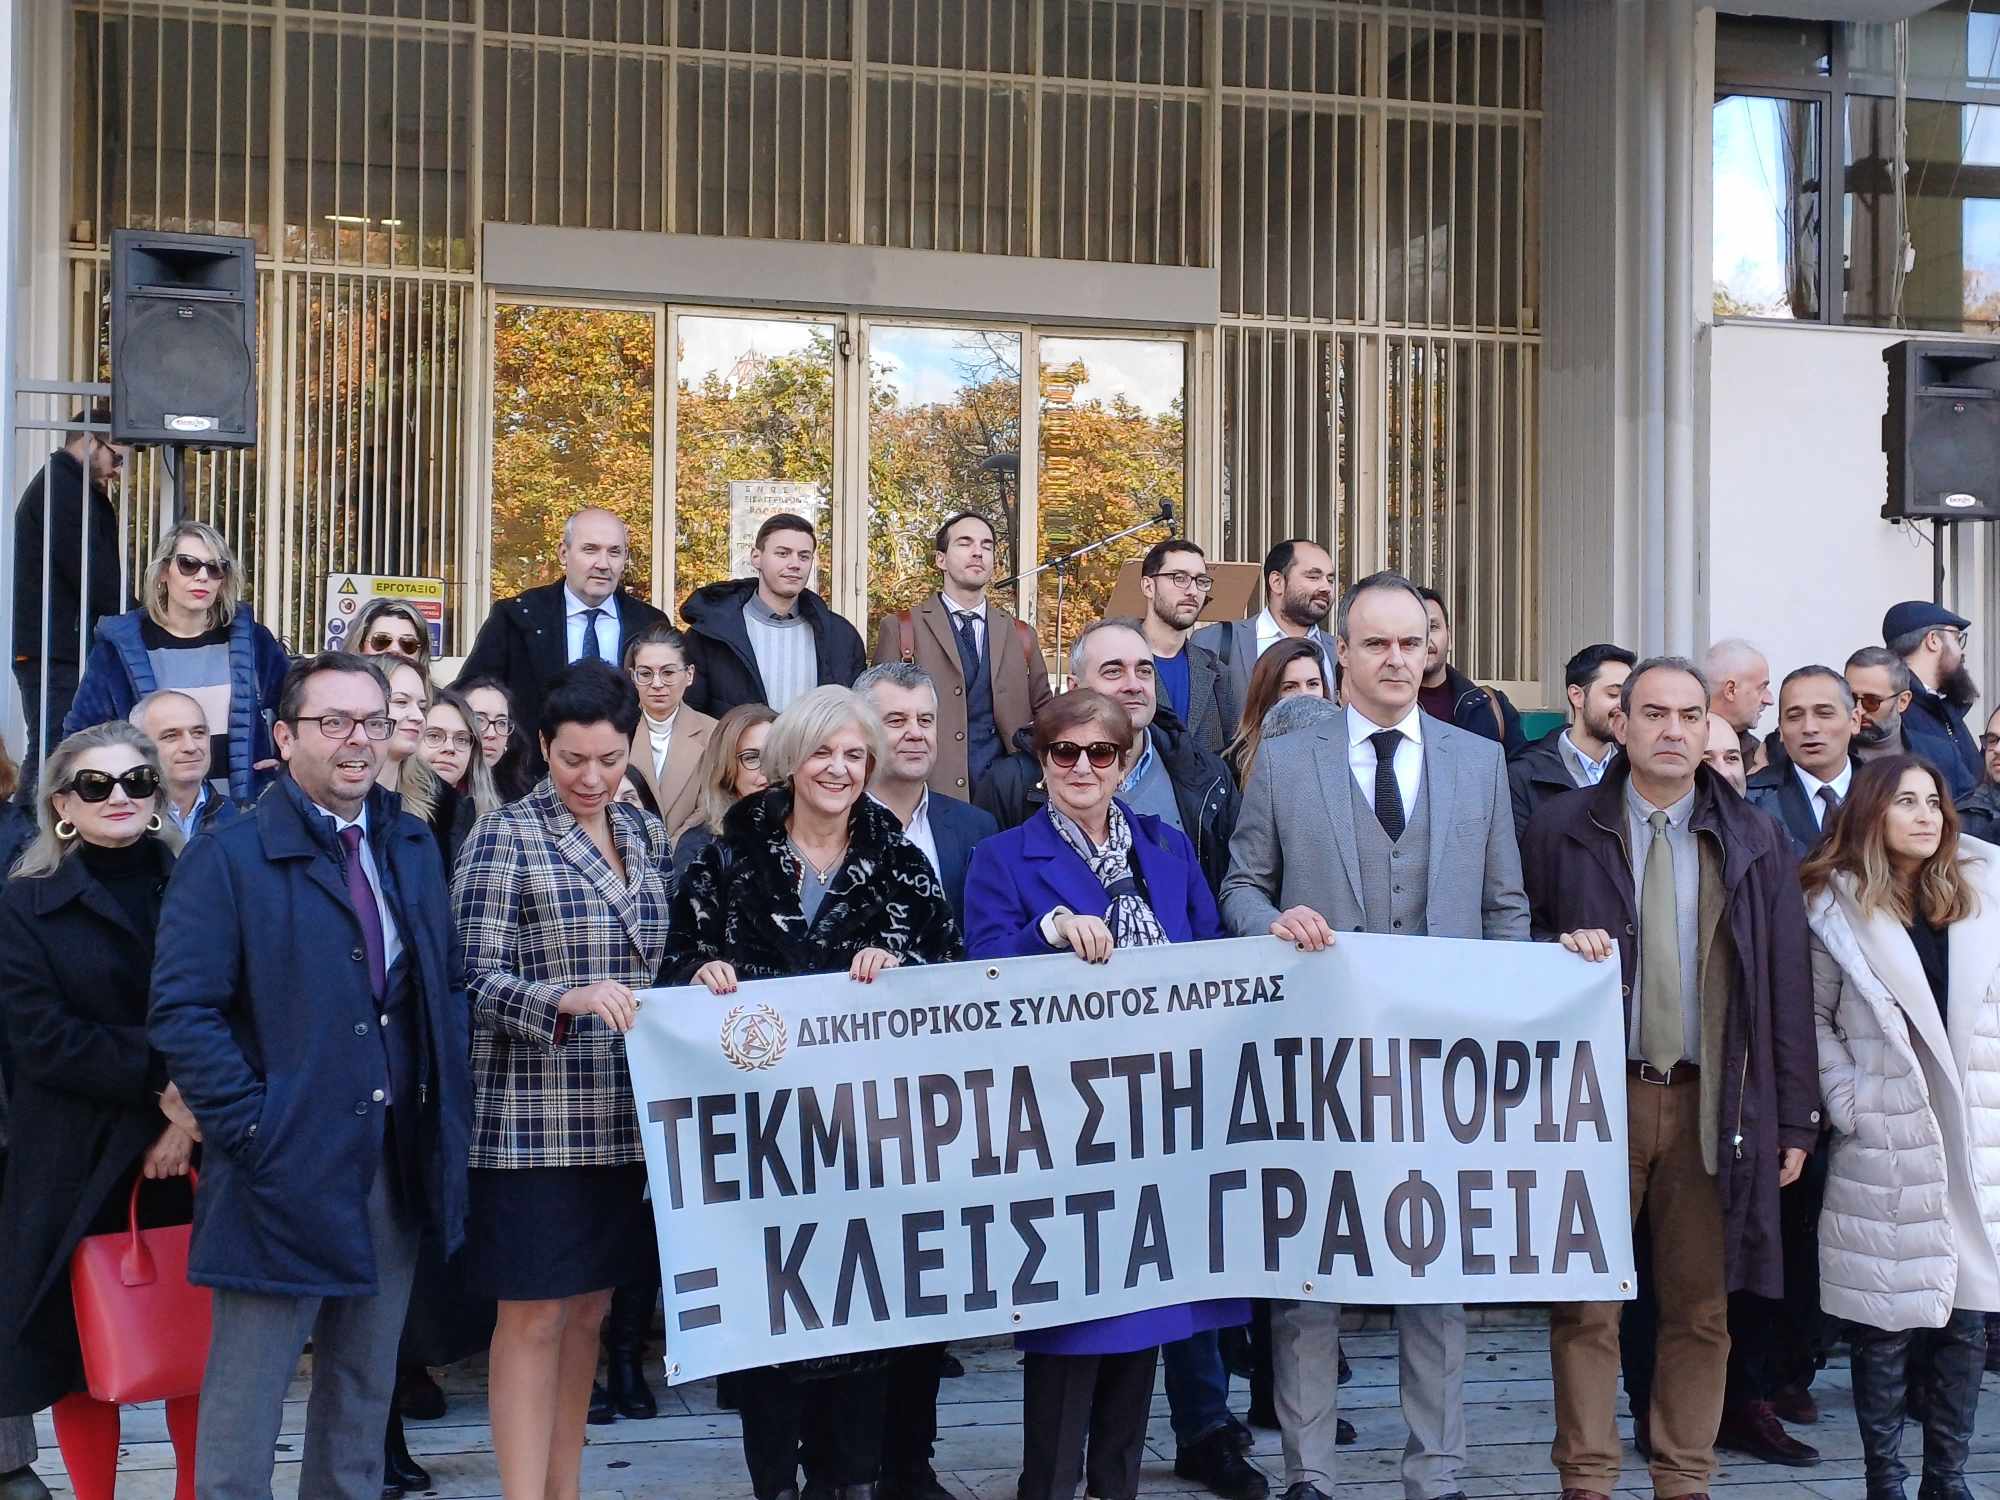 Συμβολική συγκέντρωση διααρτυρίας των δικηγόρων έξω από το δικαστικό μέγαρο Λάρισας για το φορολογικό νομοσχέδιο (ΦΩΤΟ)